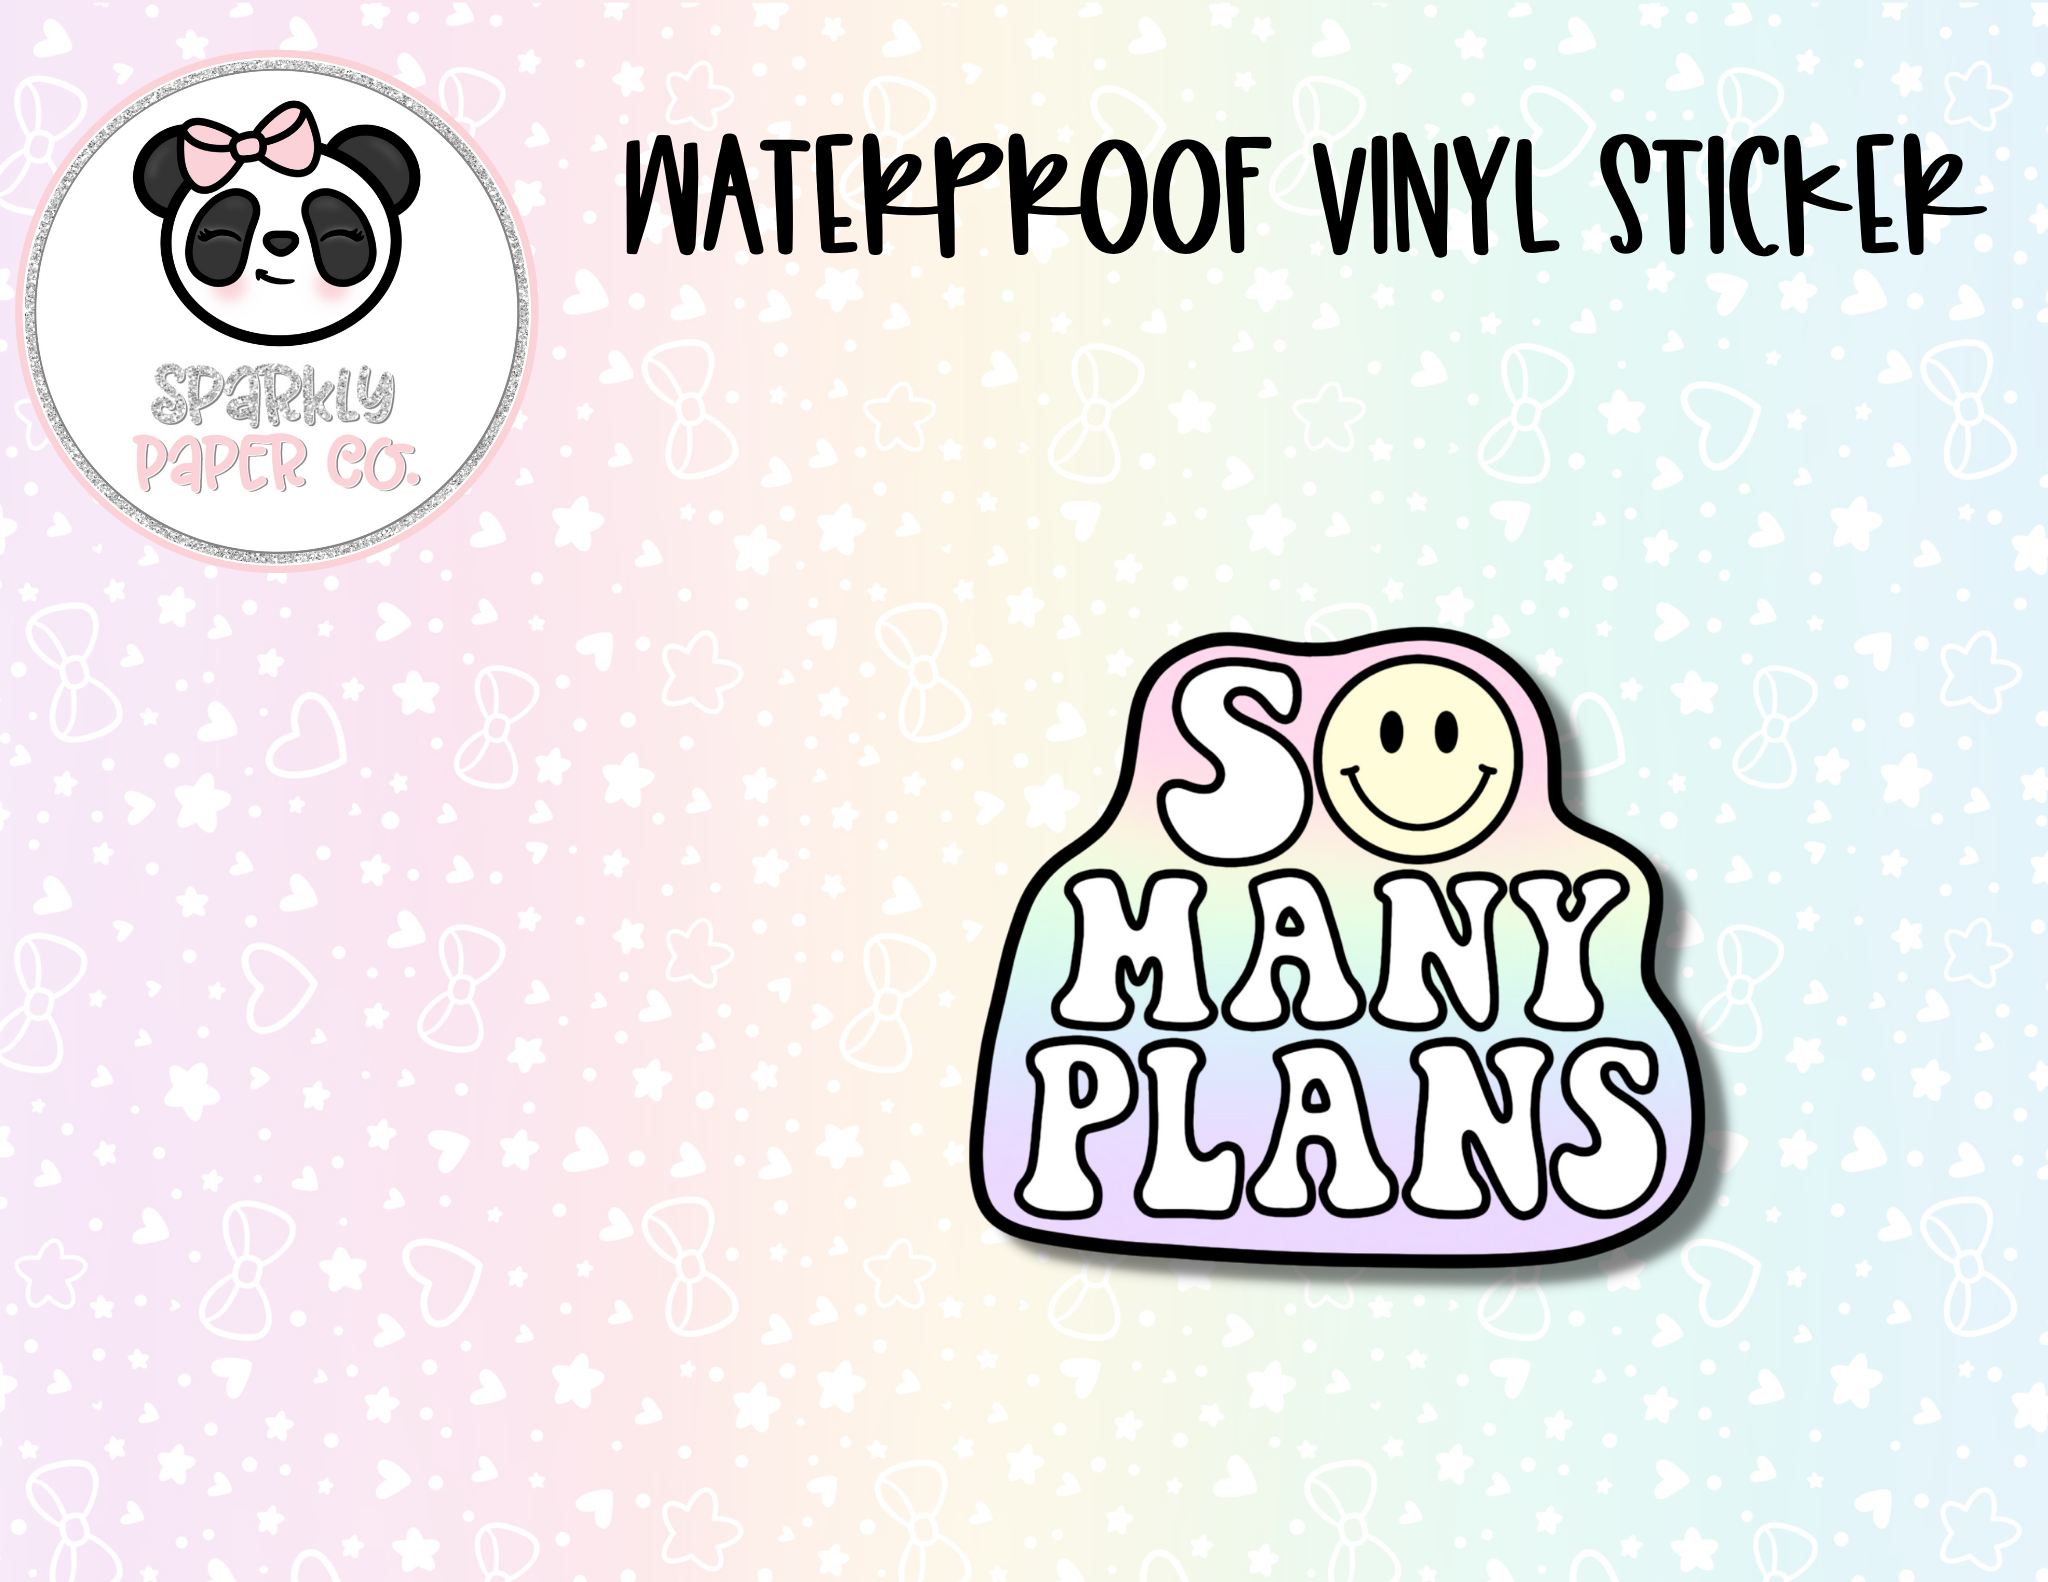 So Many Plans waterproof vinyl sticker